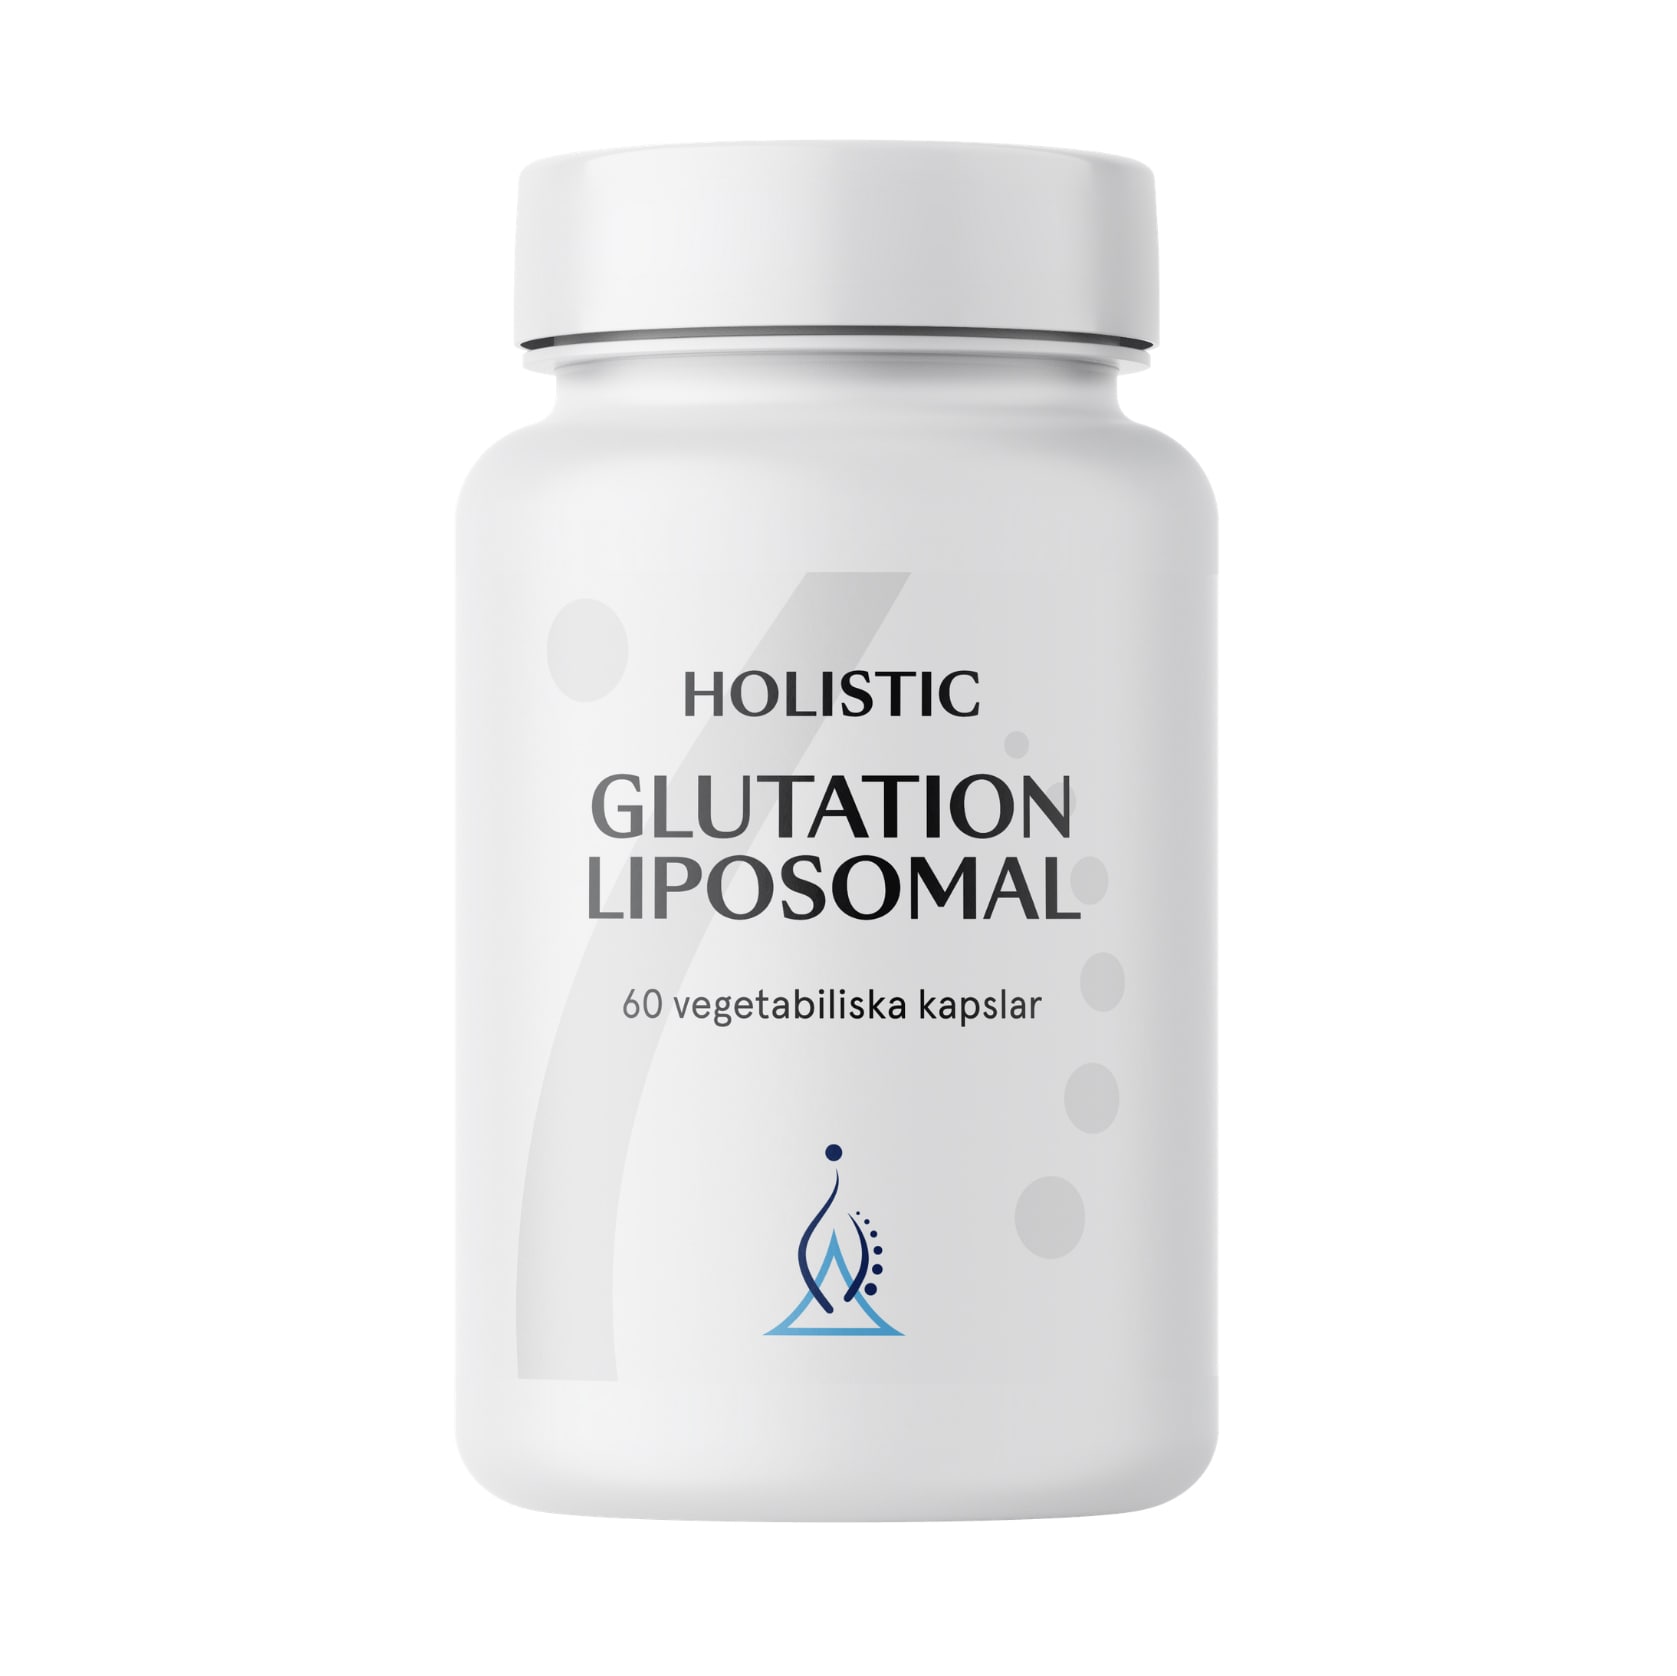 Glutation liposomal 60 kapslar